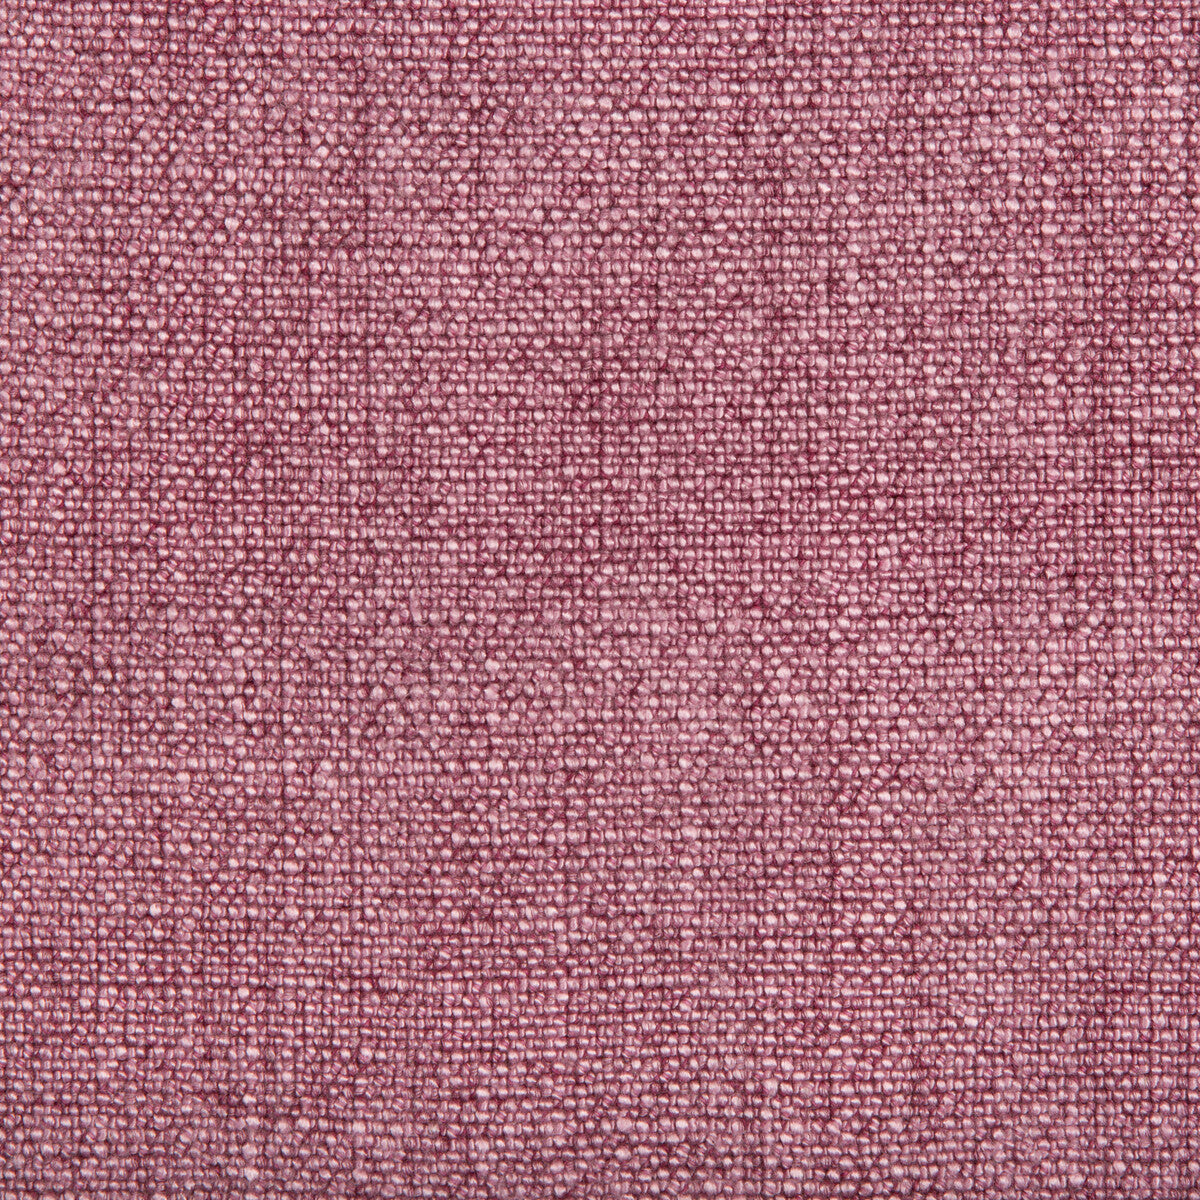 Kravet Basics fabric in 35189-110 color - pattern 35189.110.0 - by Kravet Basics